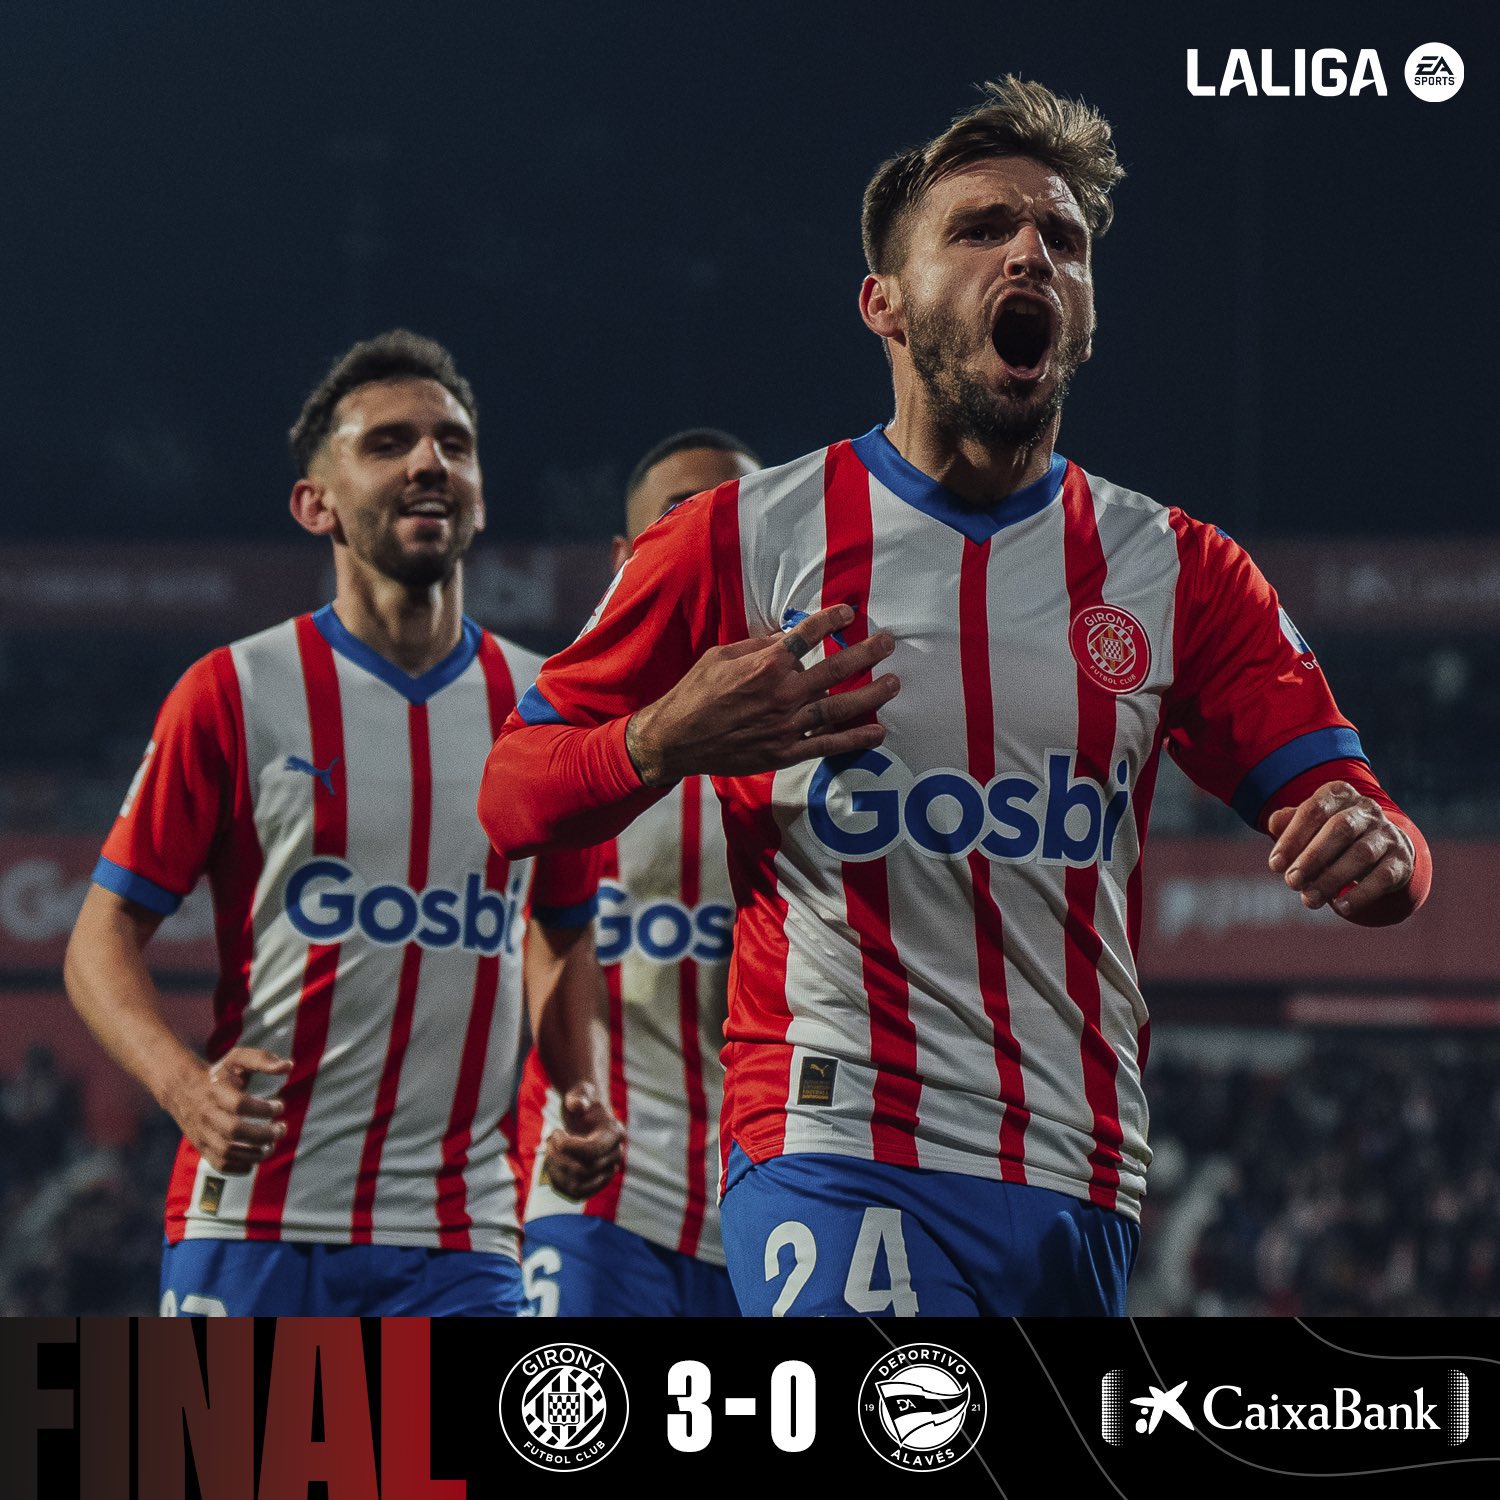 Girona não consegue recuperar a liderança da LaLiga após empate 